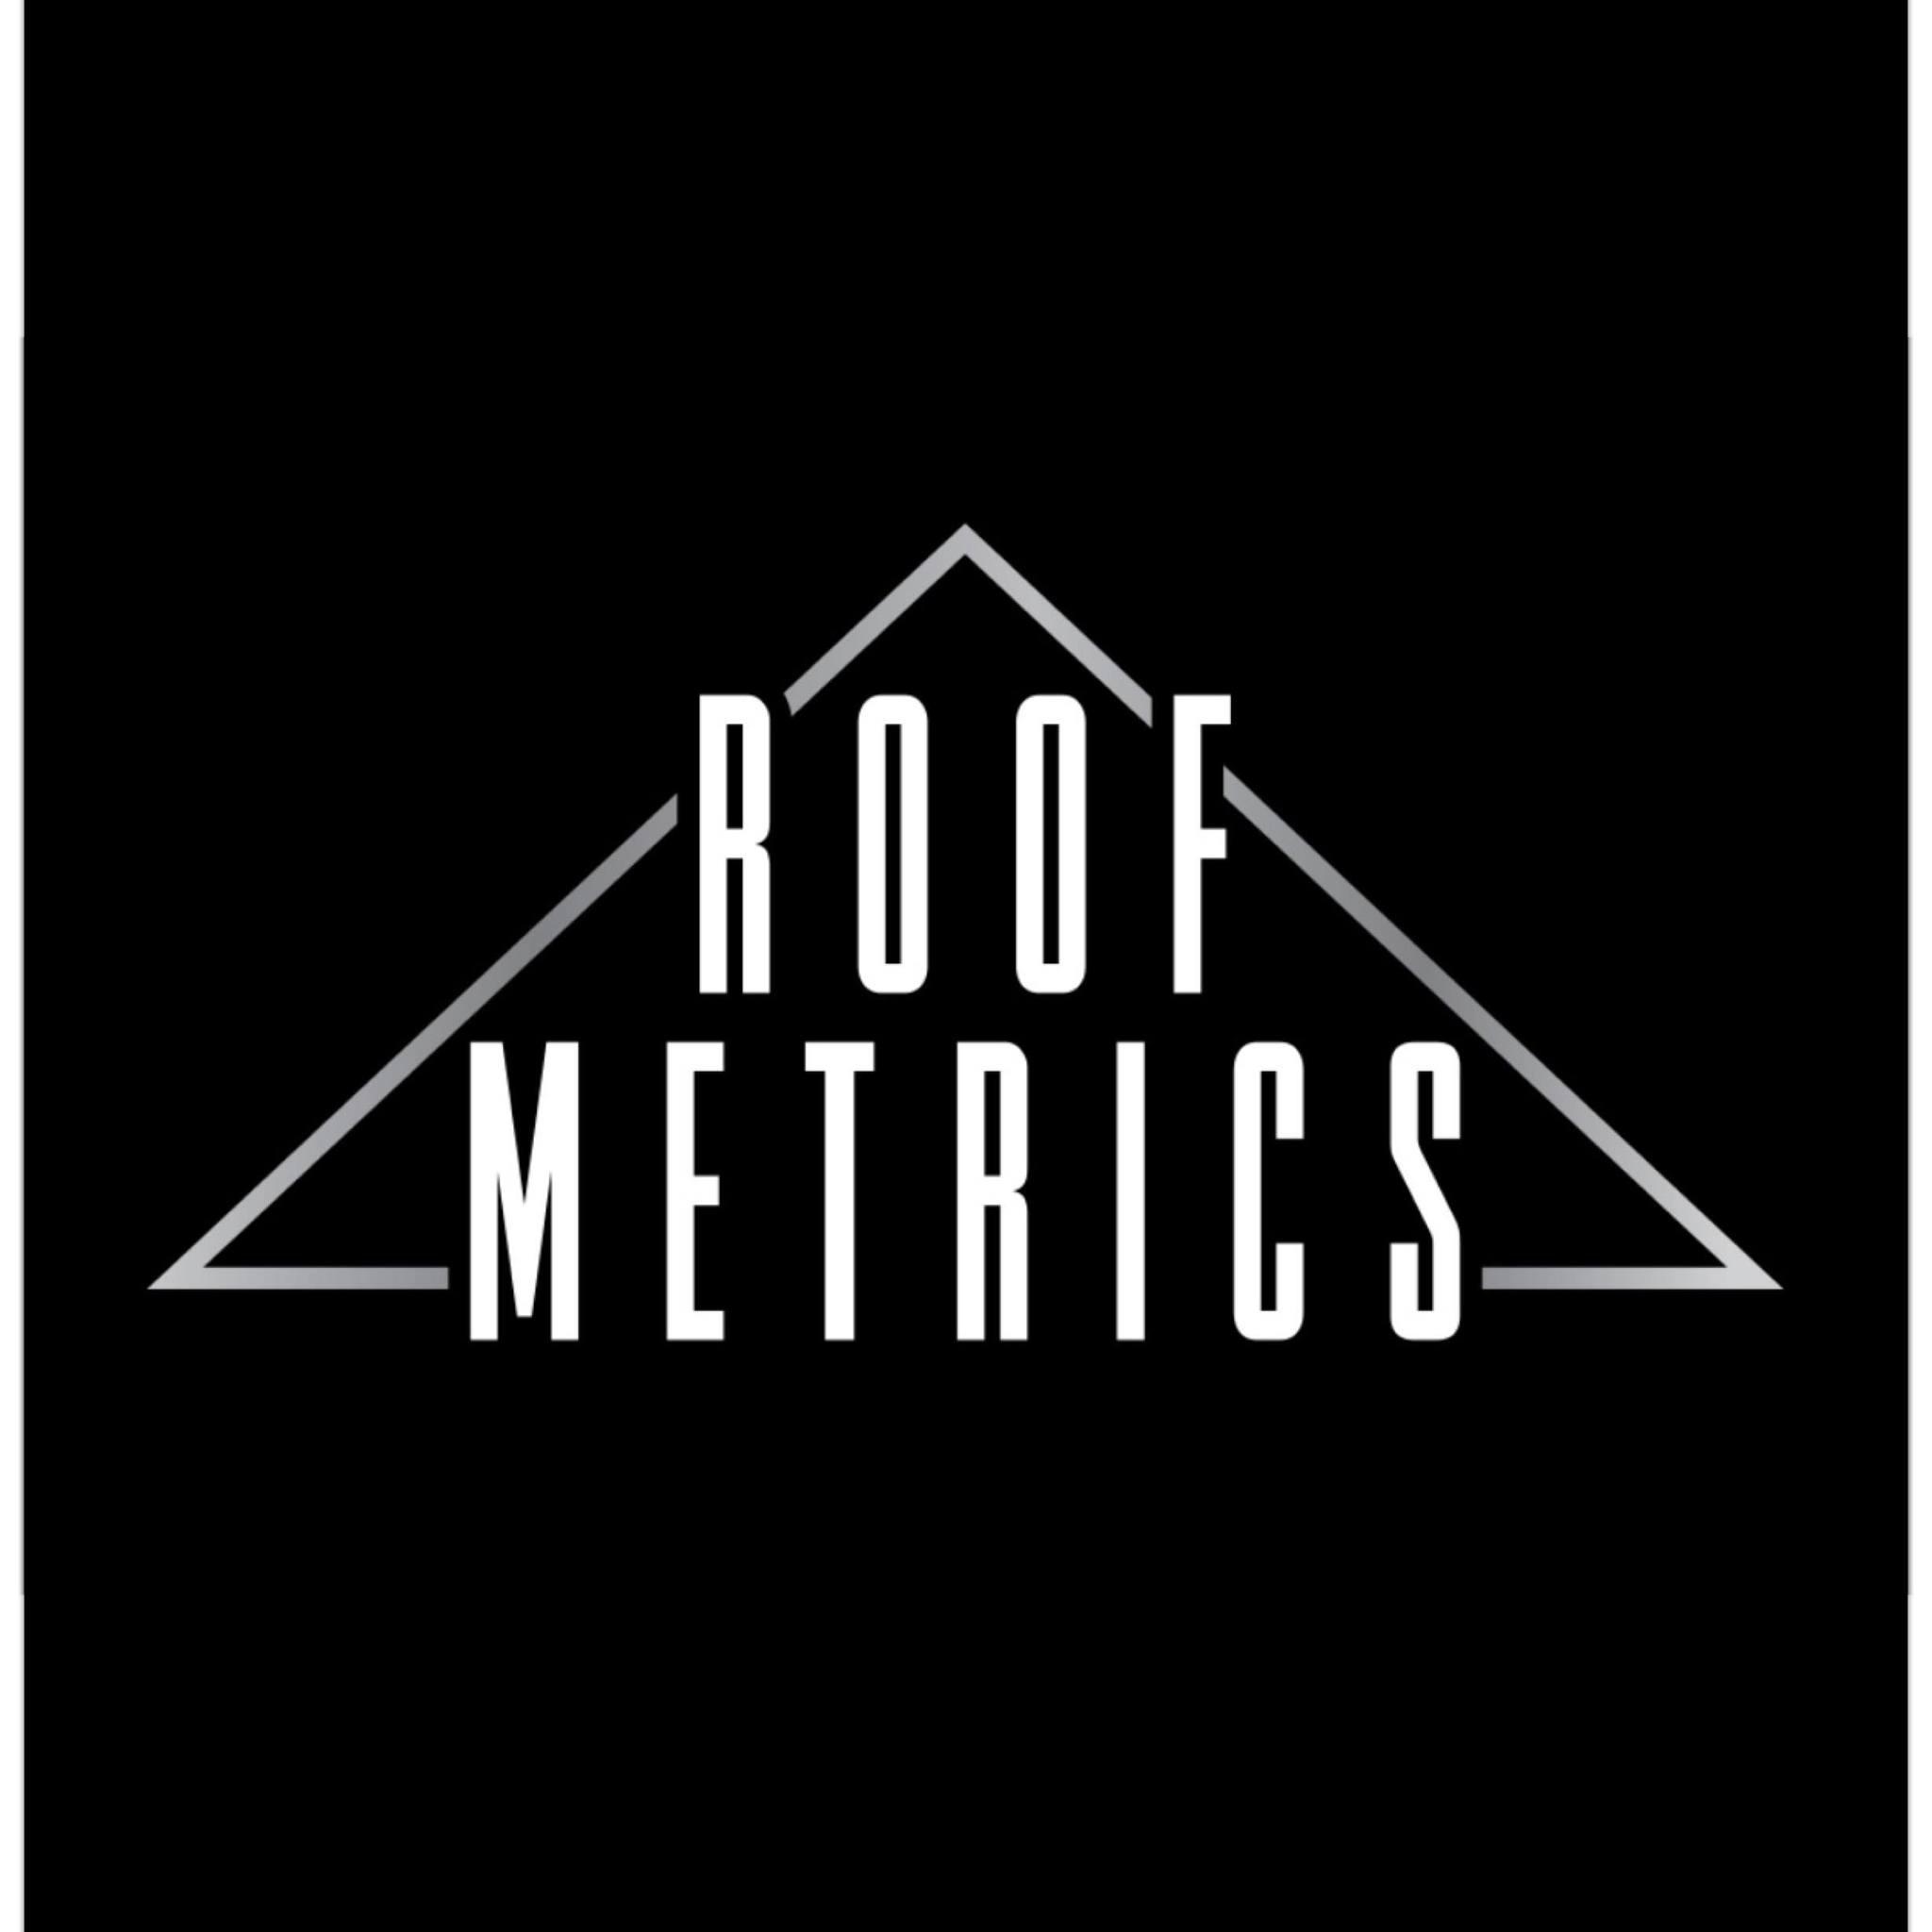 Roof Metrics